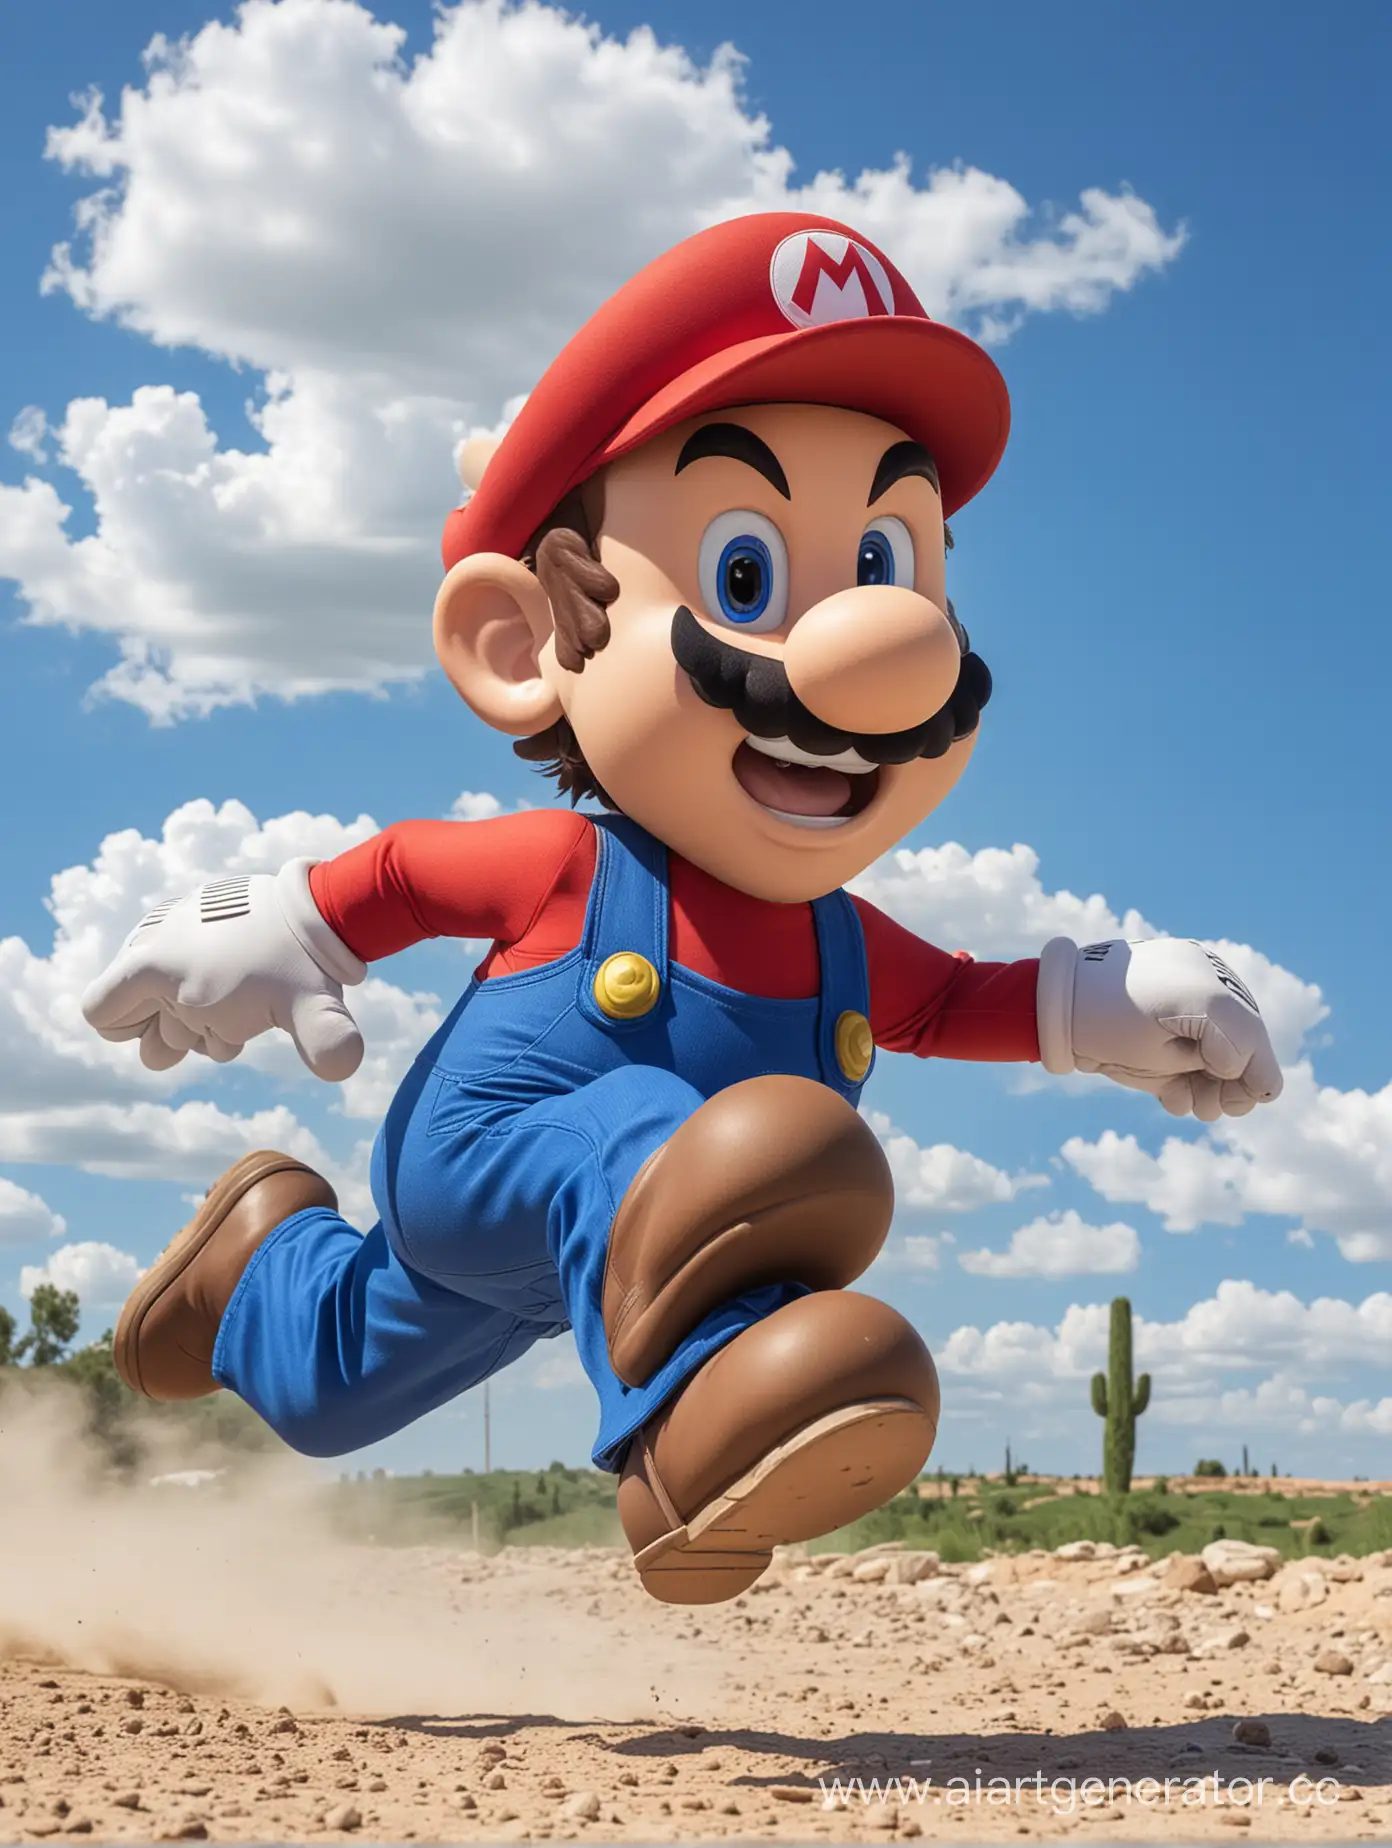 Joyful-Run-with-Mario-Against-a-Vivid-Blue-Sky